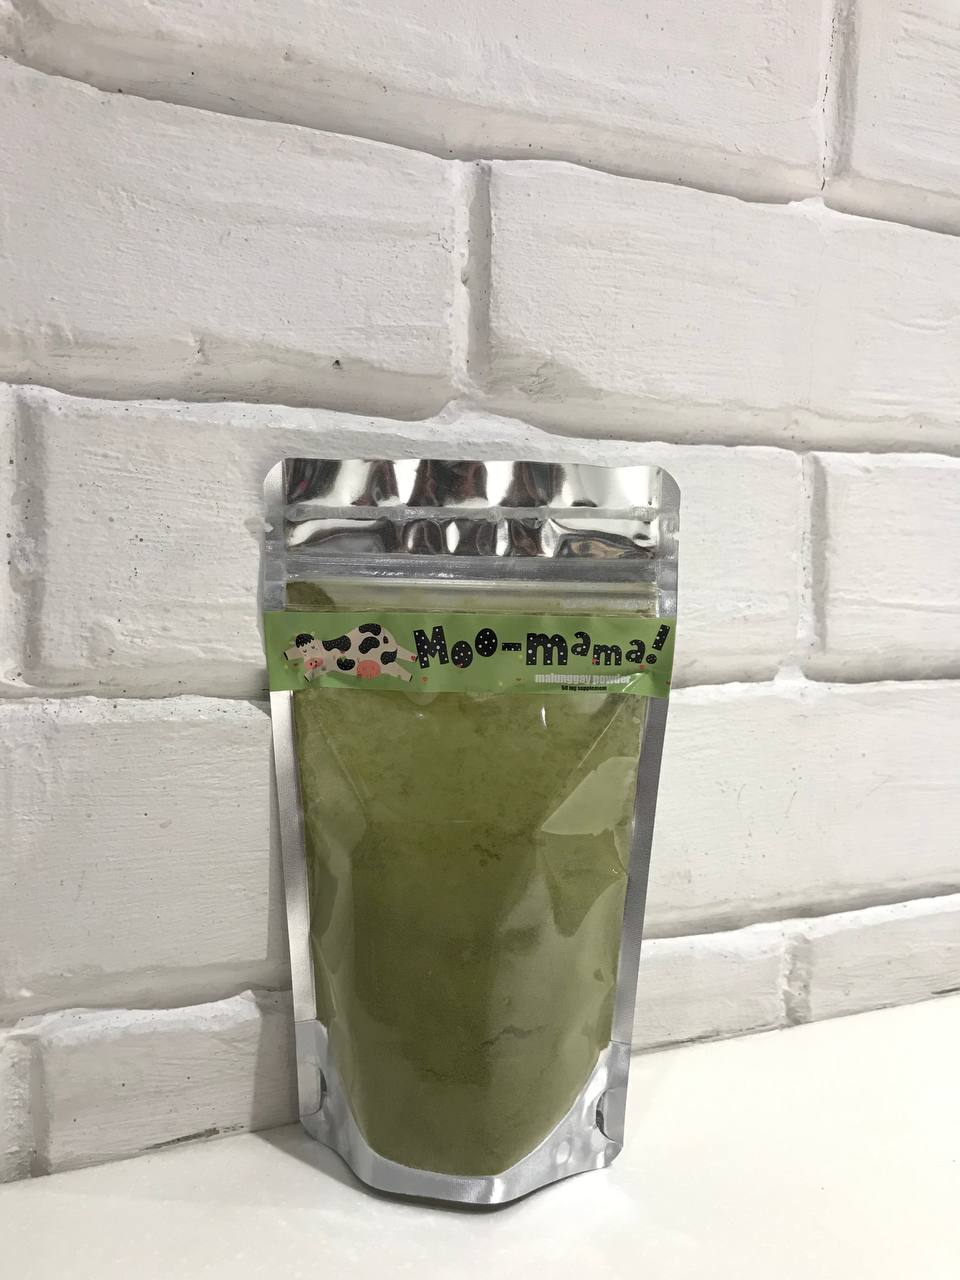 Moo-mama! Malunggay Powder Extract 50g